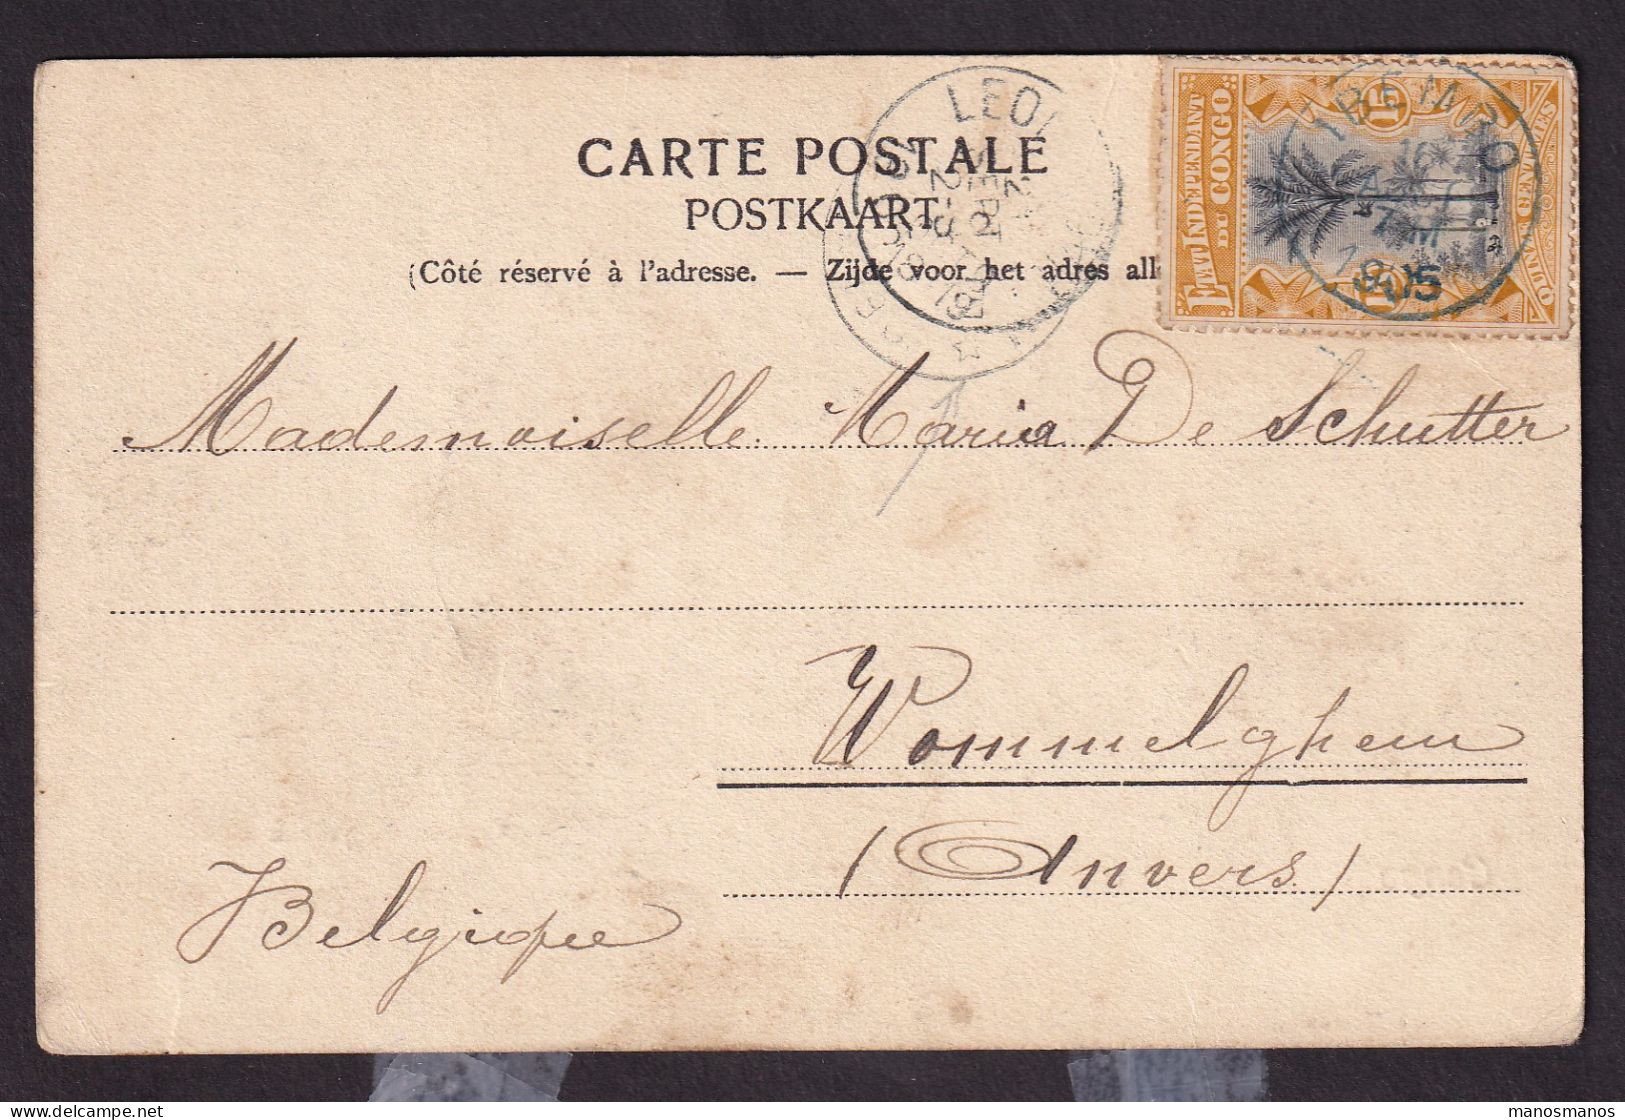 DDGG 012 - Carte-Vue TP Mols 15 C  Etat Indépendant IBEMBO (UELE) 1905 Via LEO Vers Relais WOMMELGHEM Belgique - Lettres & Documents